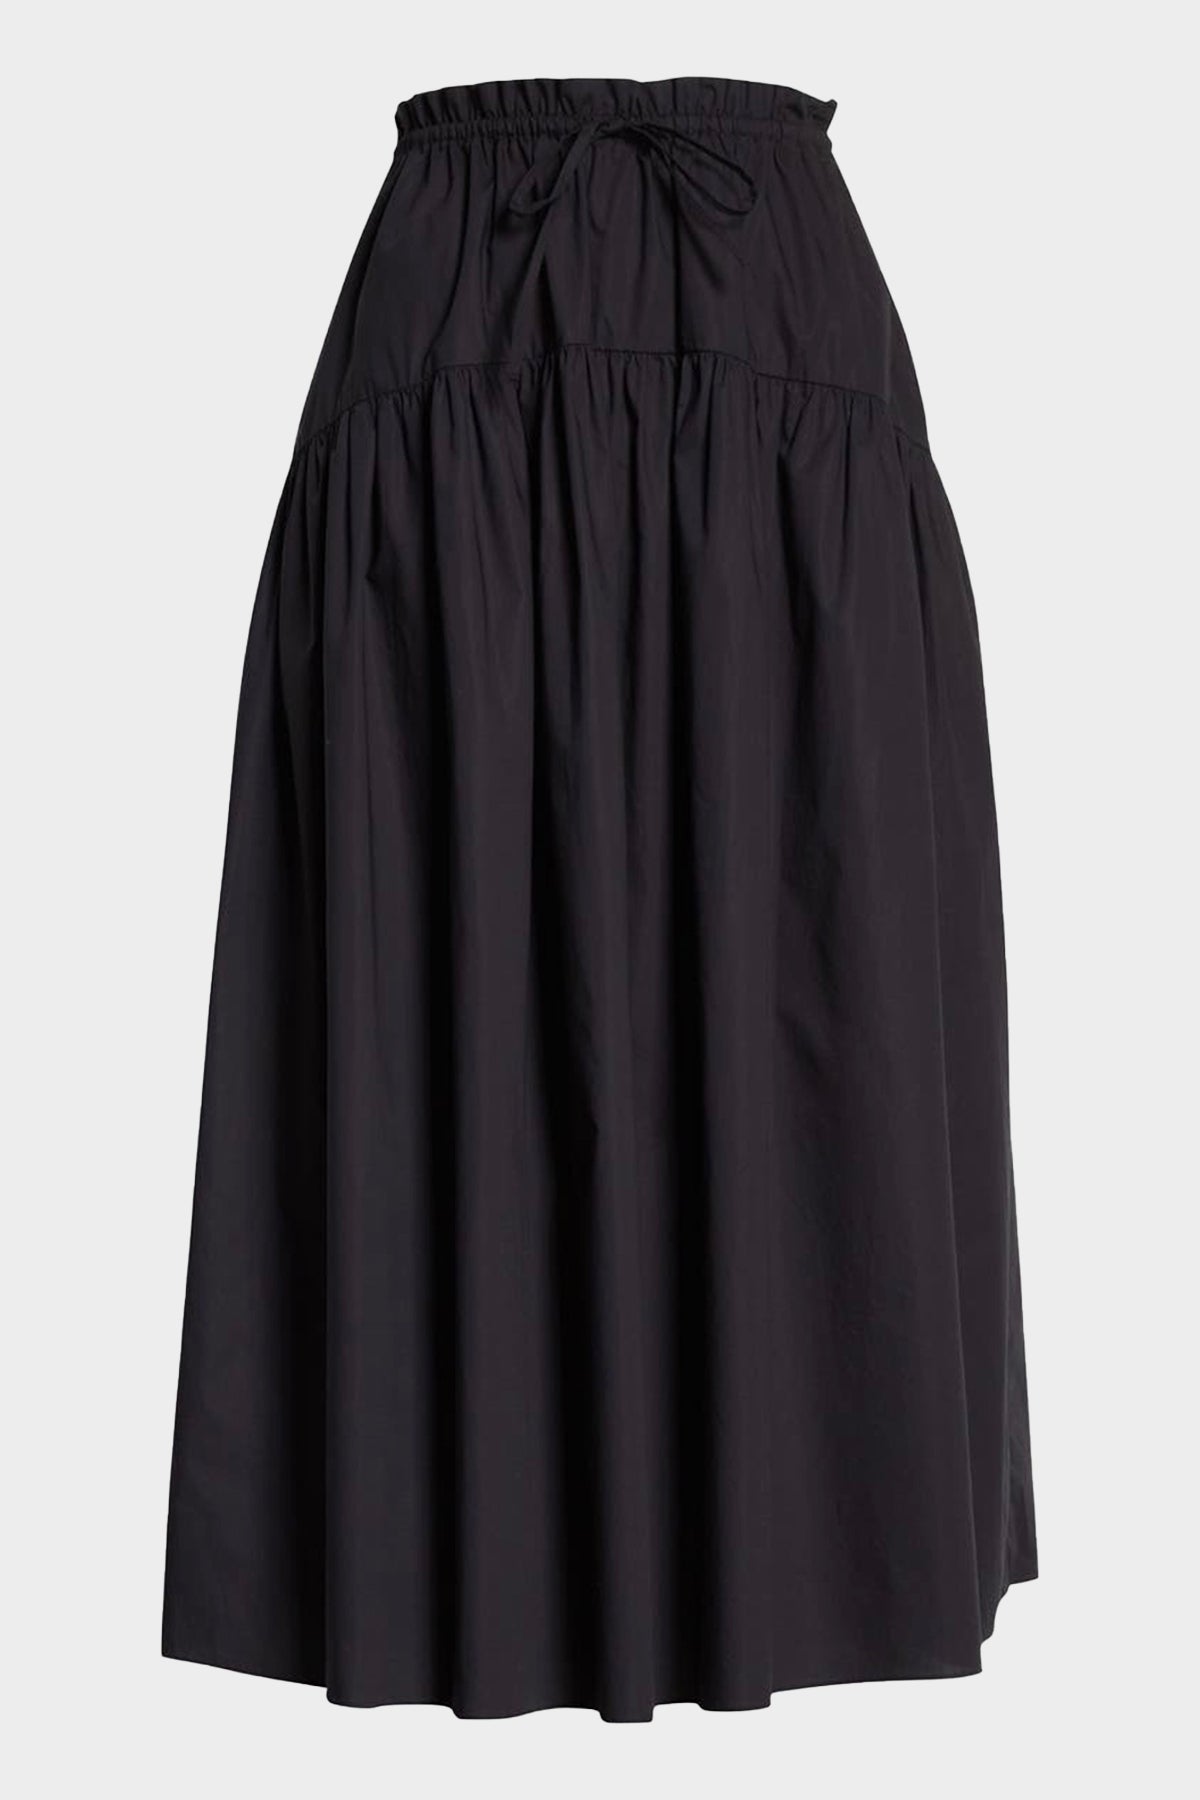 Ianna Skirt in Noir - shop-olivia.com